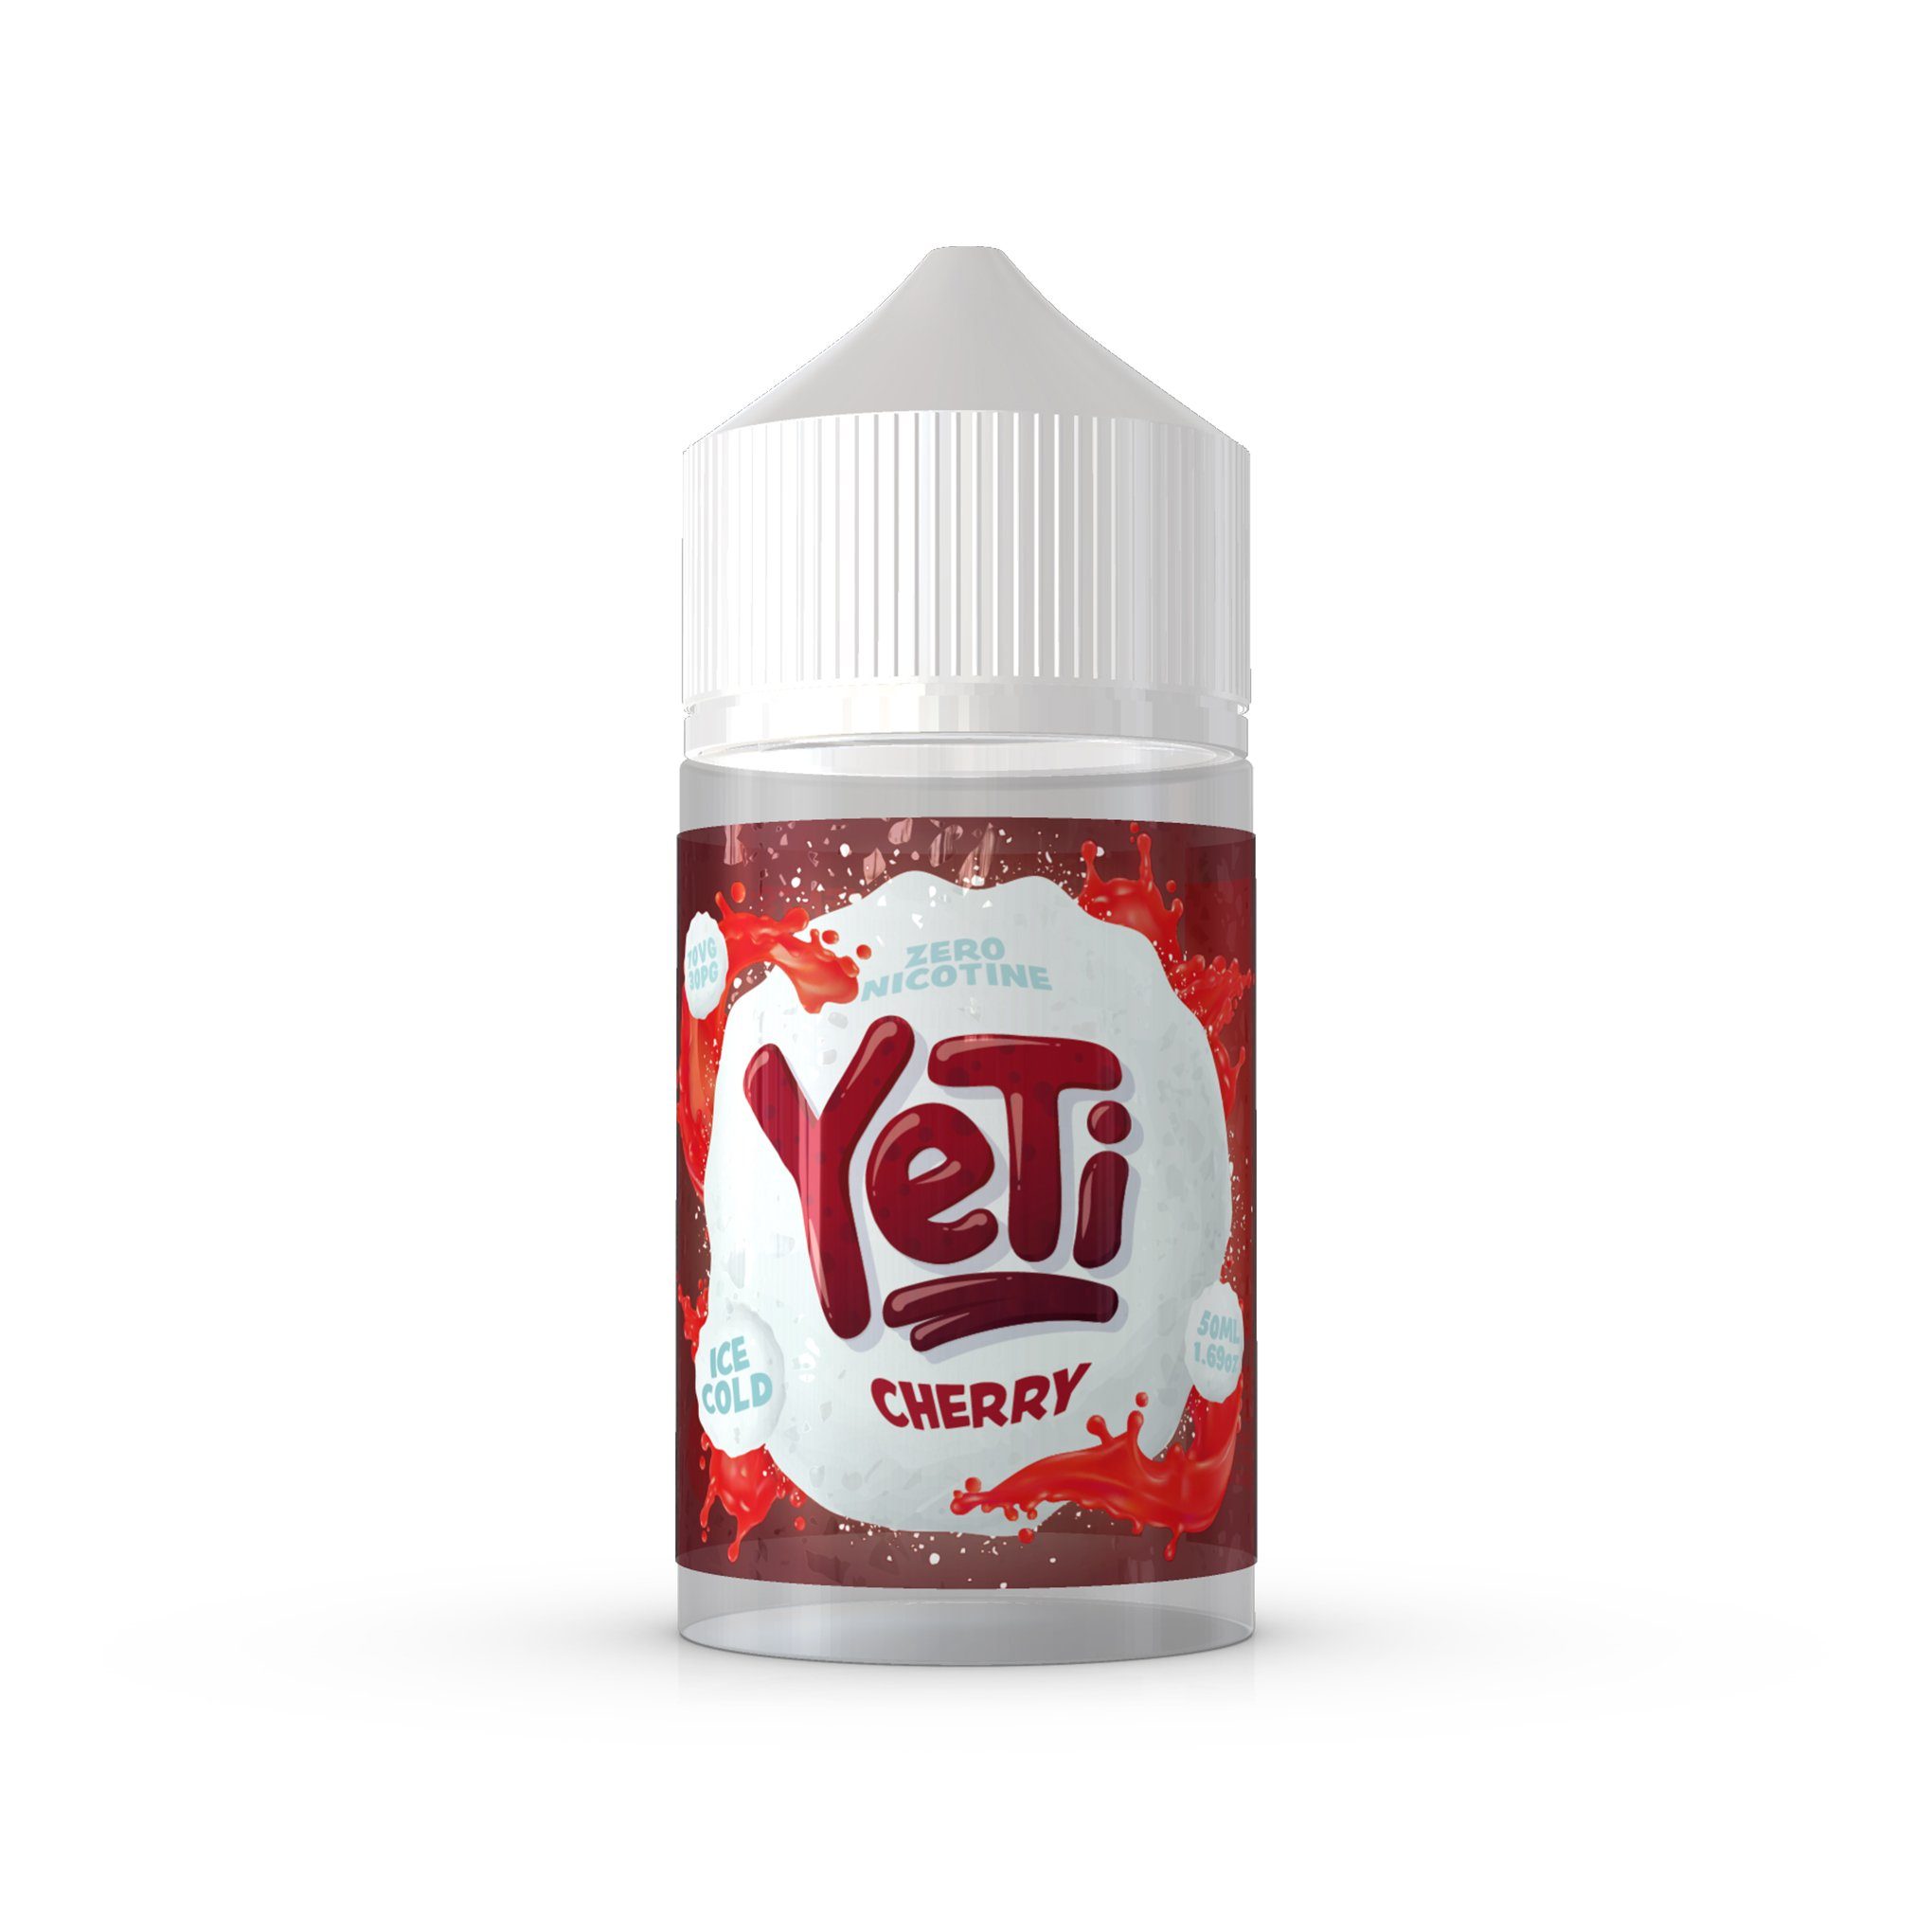 Yeti 50ml Short Fill E-Liquid Cherry Ice